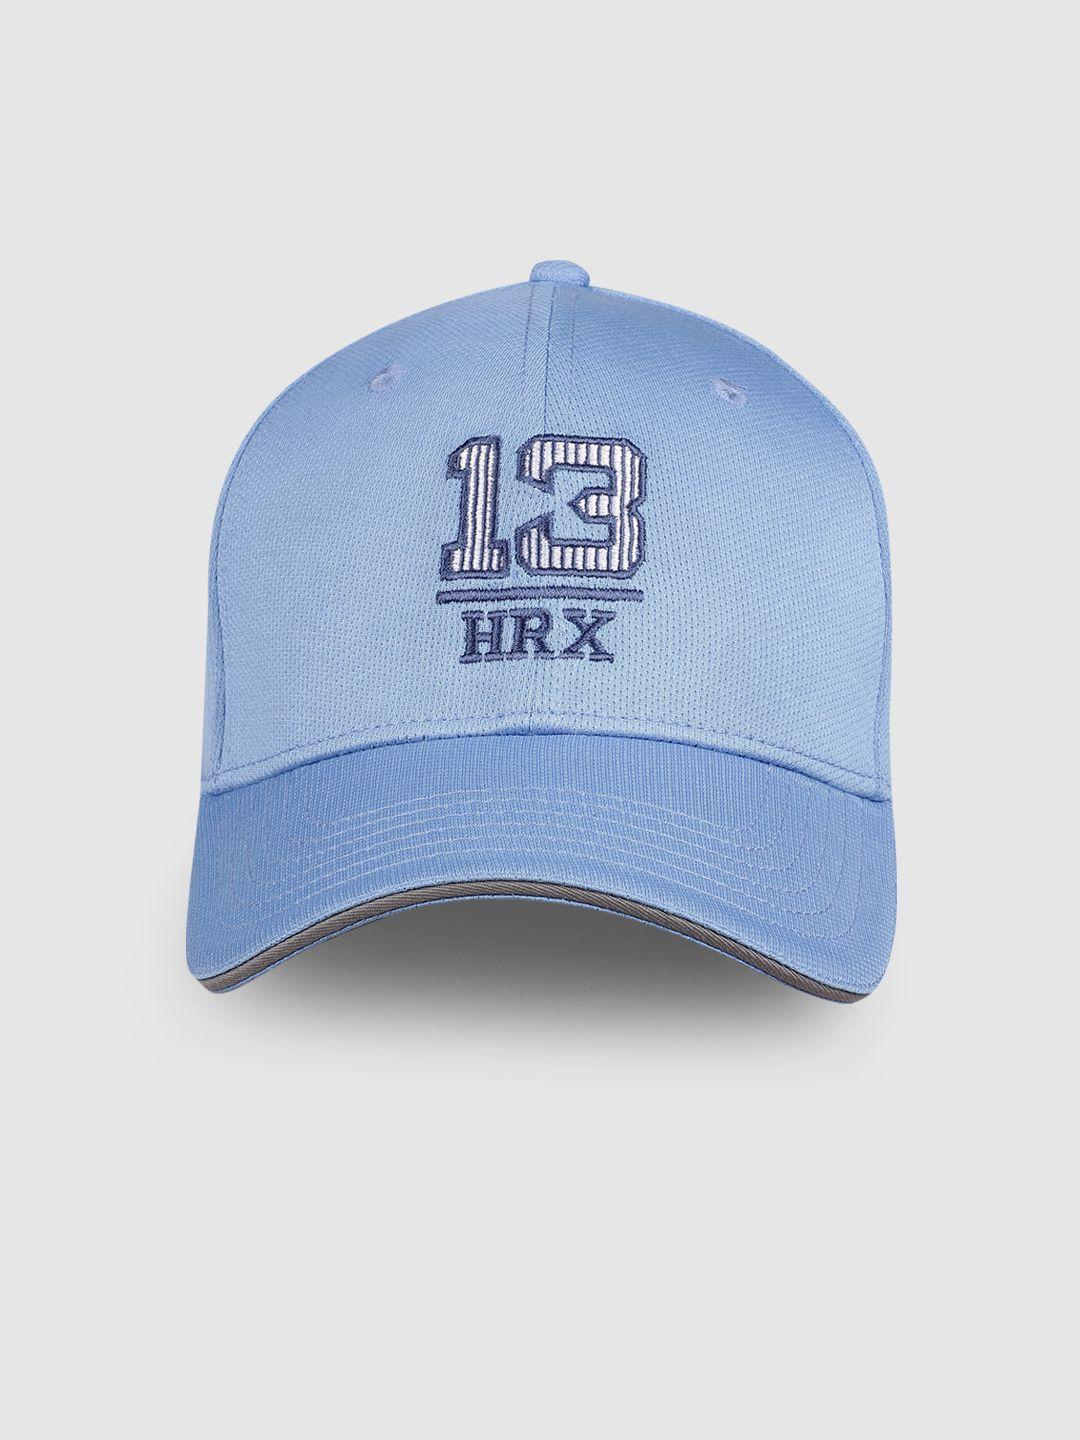 hrx by hrithik roshan unisex light blue embroidered baseball cap